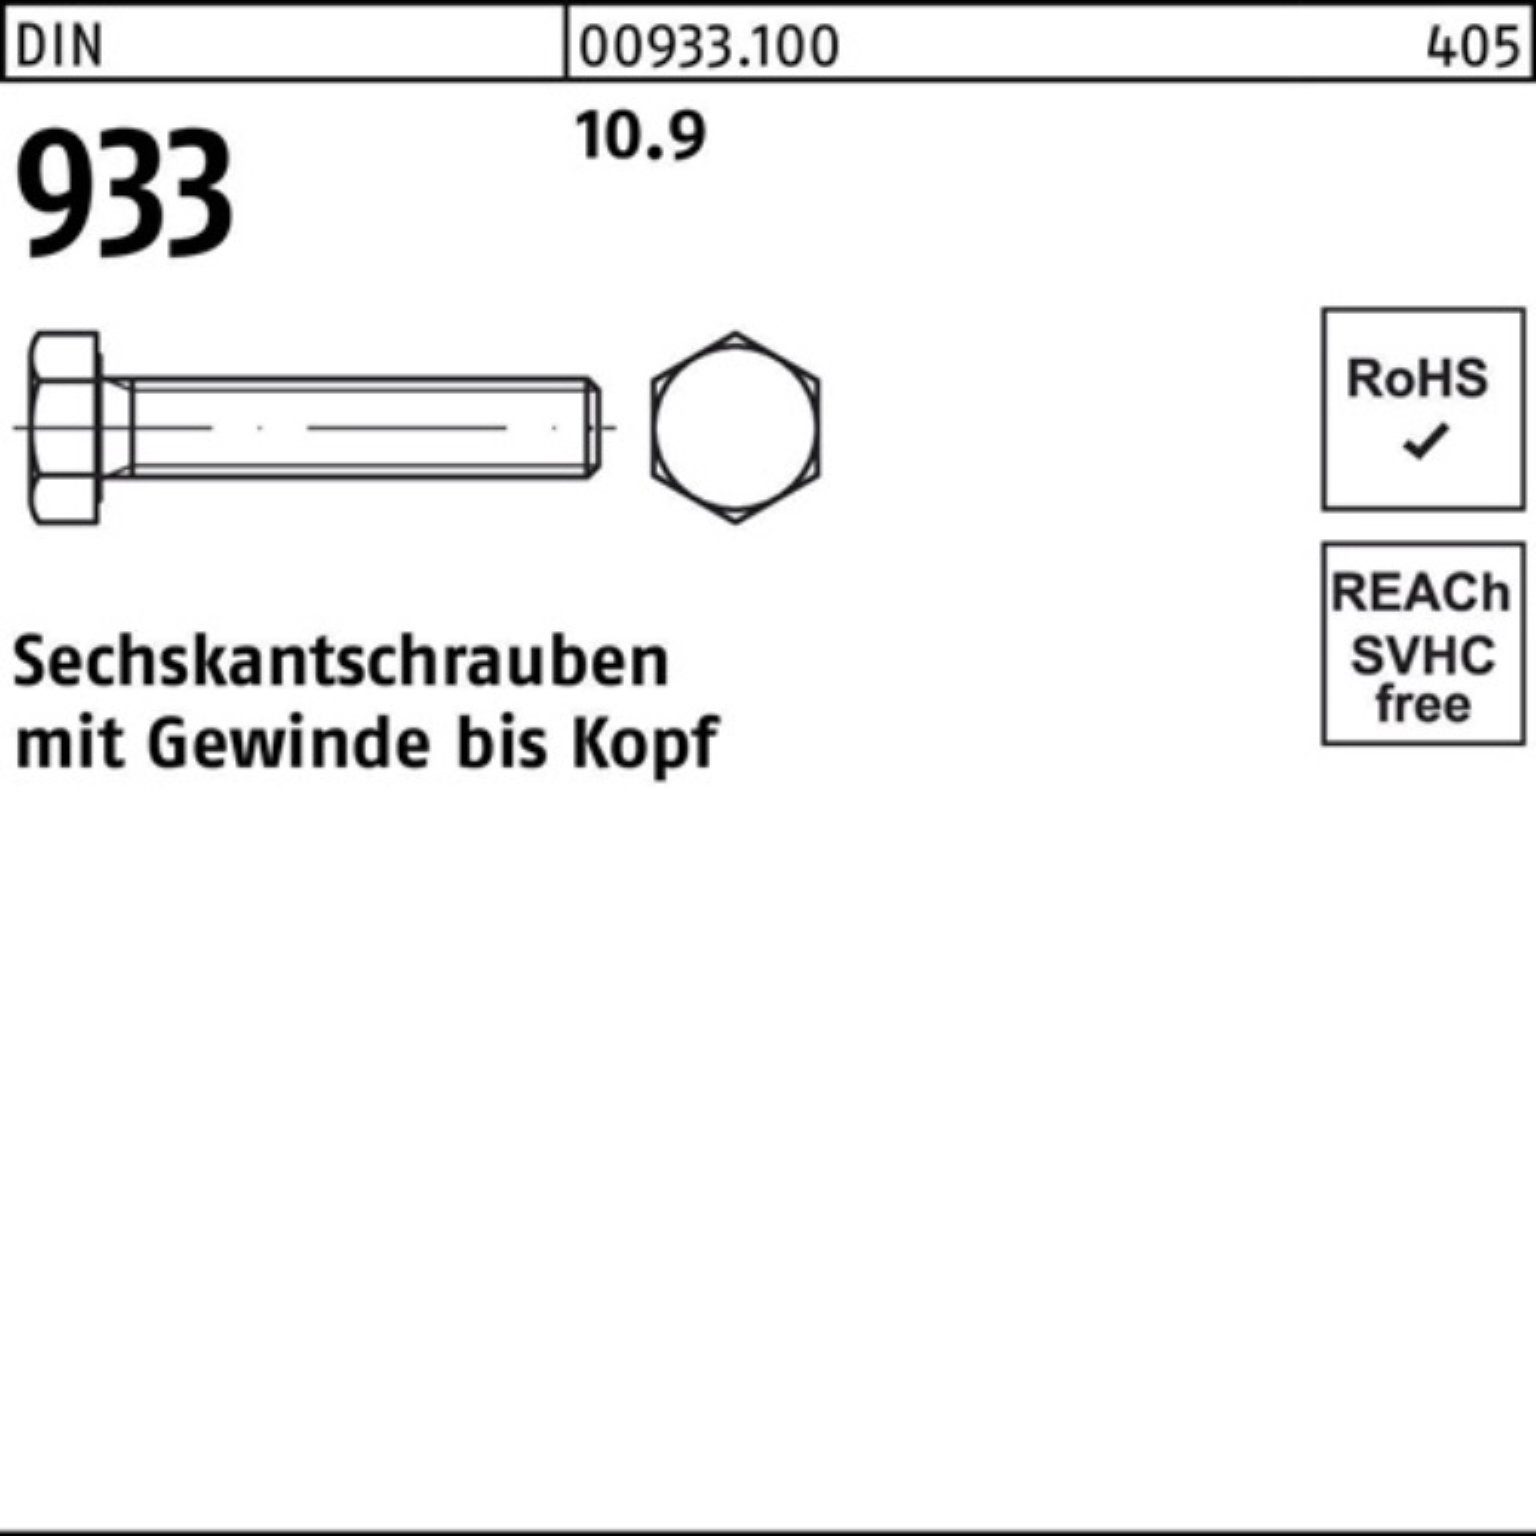 Reyher Sechskantschraube 100er Pack 933 DIN 25 Stück 933 Sechskantschraube M22x VG 65 10.9 DIN